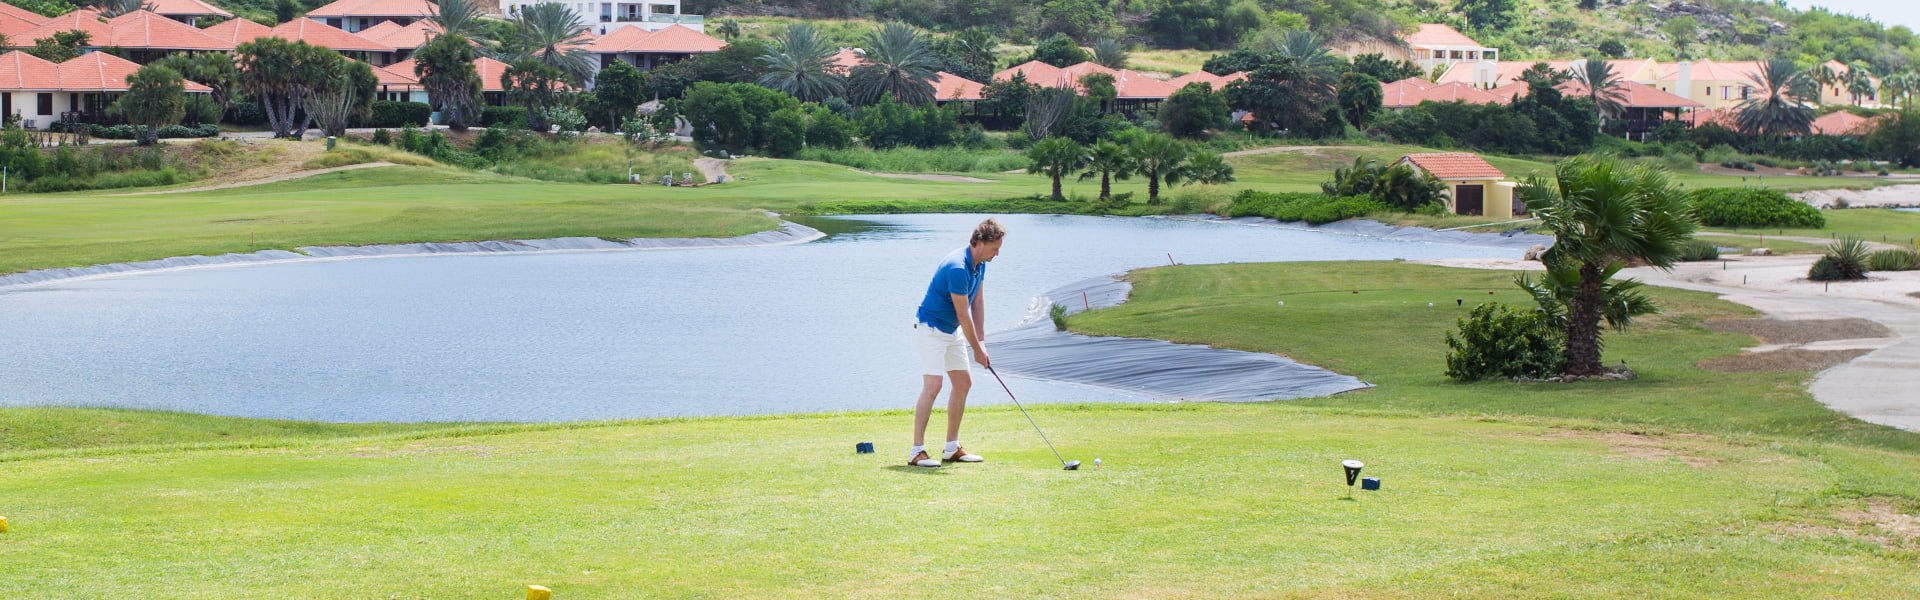 golfbaan in de omgeving van vakantiehuis curacao